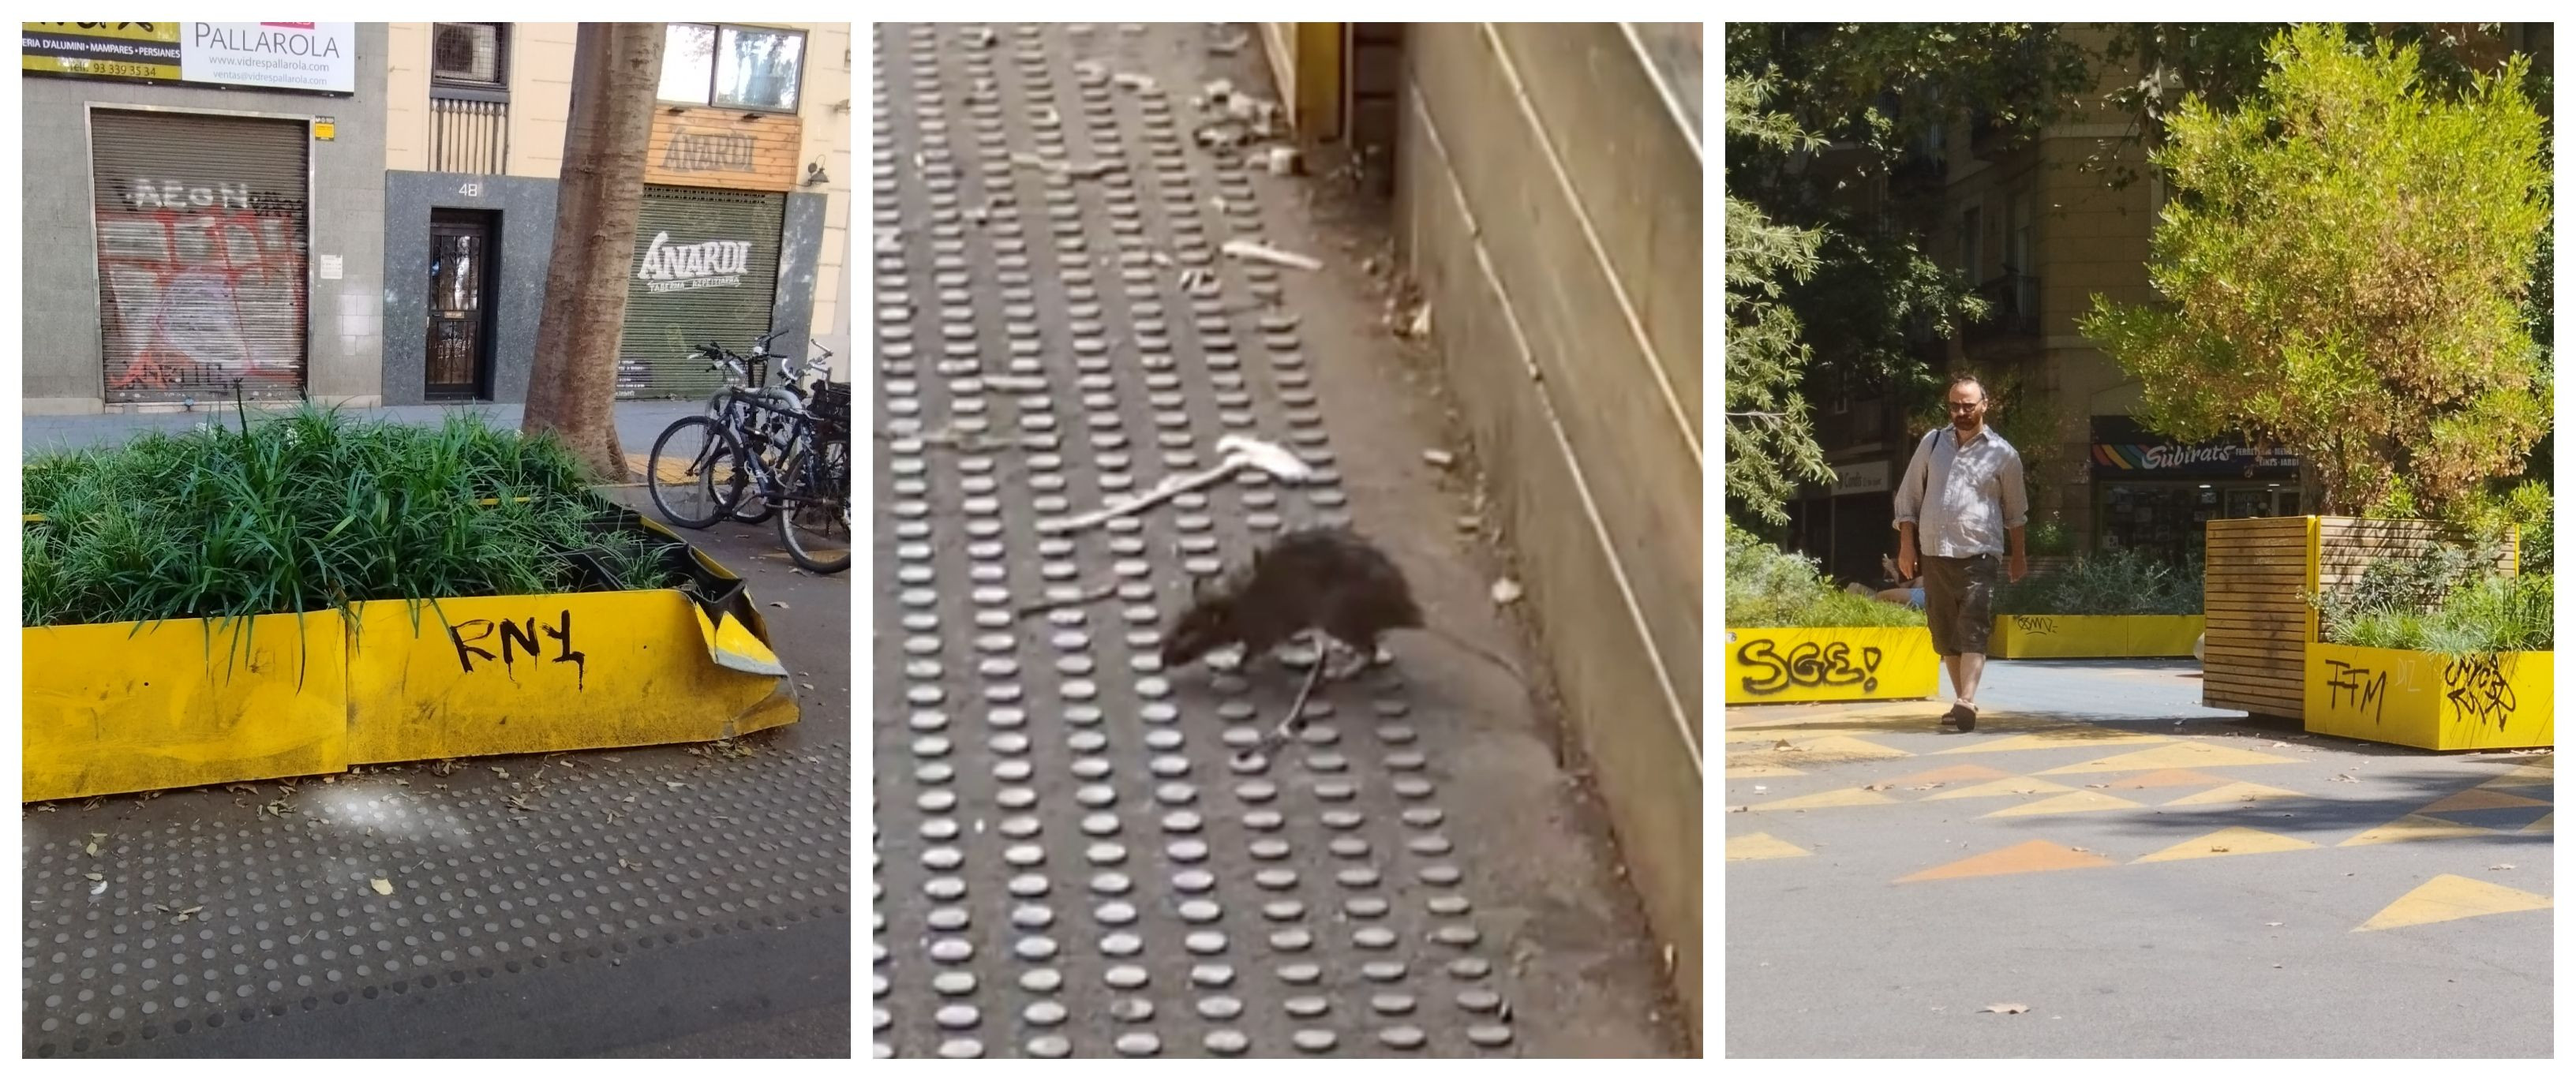 Grafitis y ratas conviven en la 'superilla' de Sant Antoni de Barcelona / METRÓPOLI